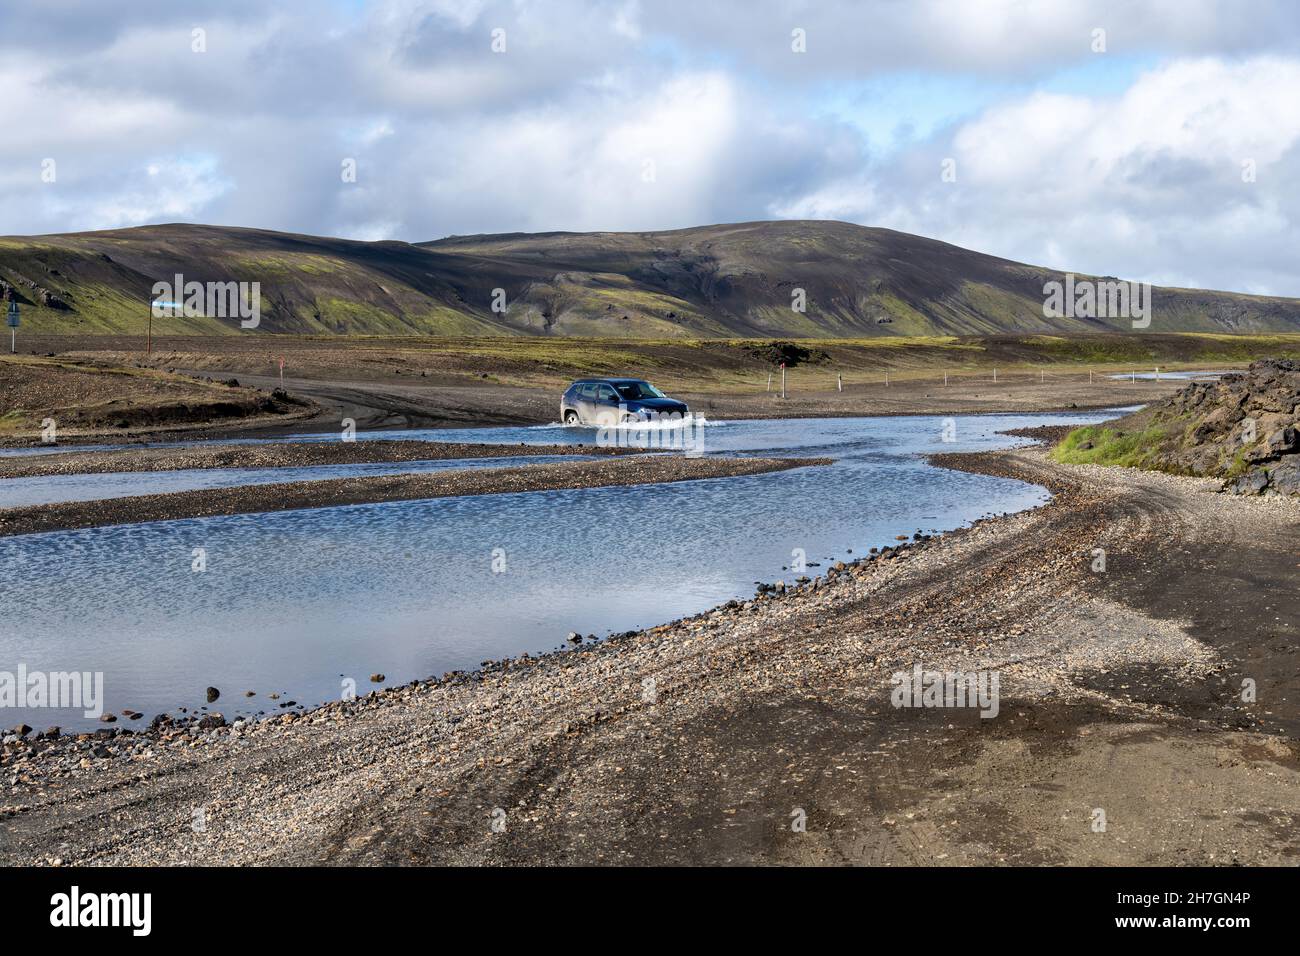 Vista di un'auto a quattro ruote motrici nell'acqua di un fiume in uno degli incroci vicino vulcano Katla su Islanda con montagne sullo sfondo con l Foto Stock